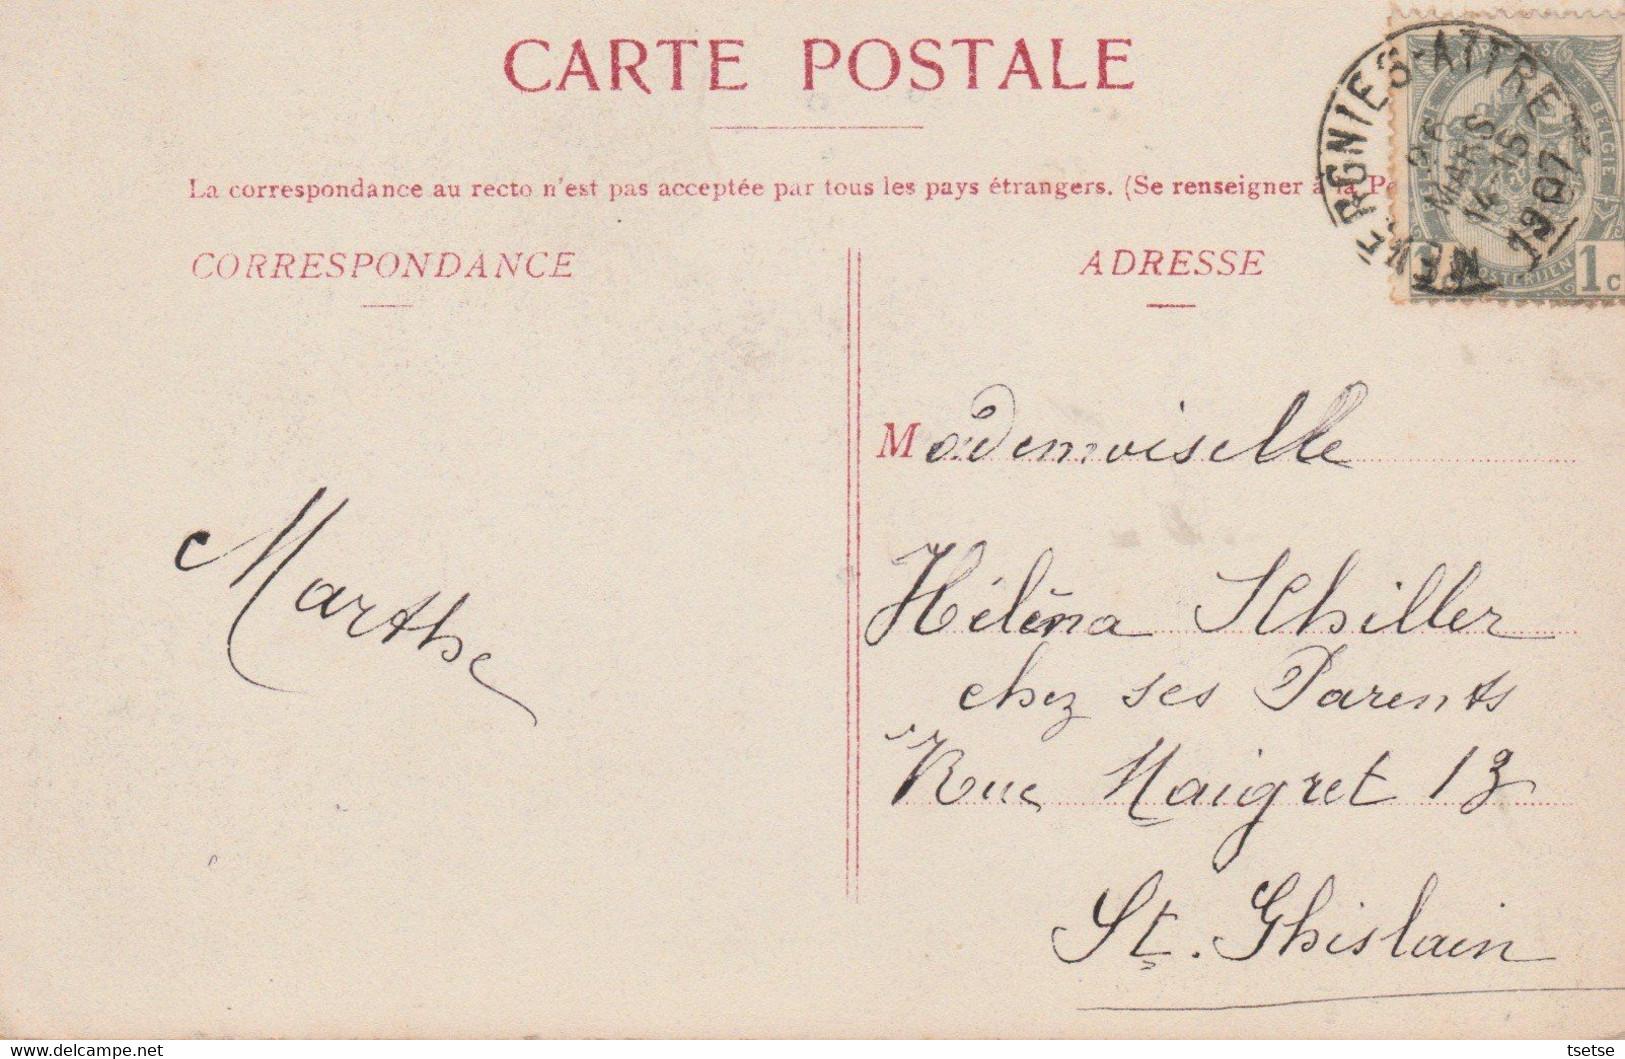 Tongre-Notre-Dame - Eglise , Vue Du Canal - 1907 ( Voir Verso ) - Chièvres